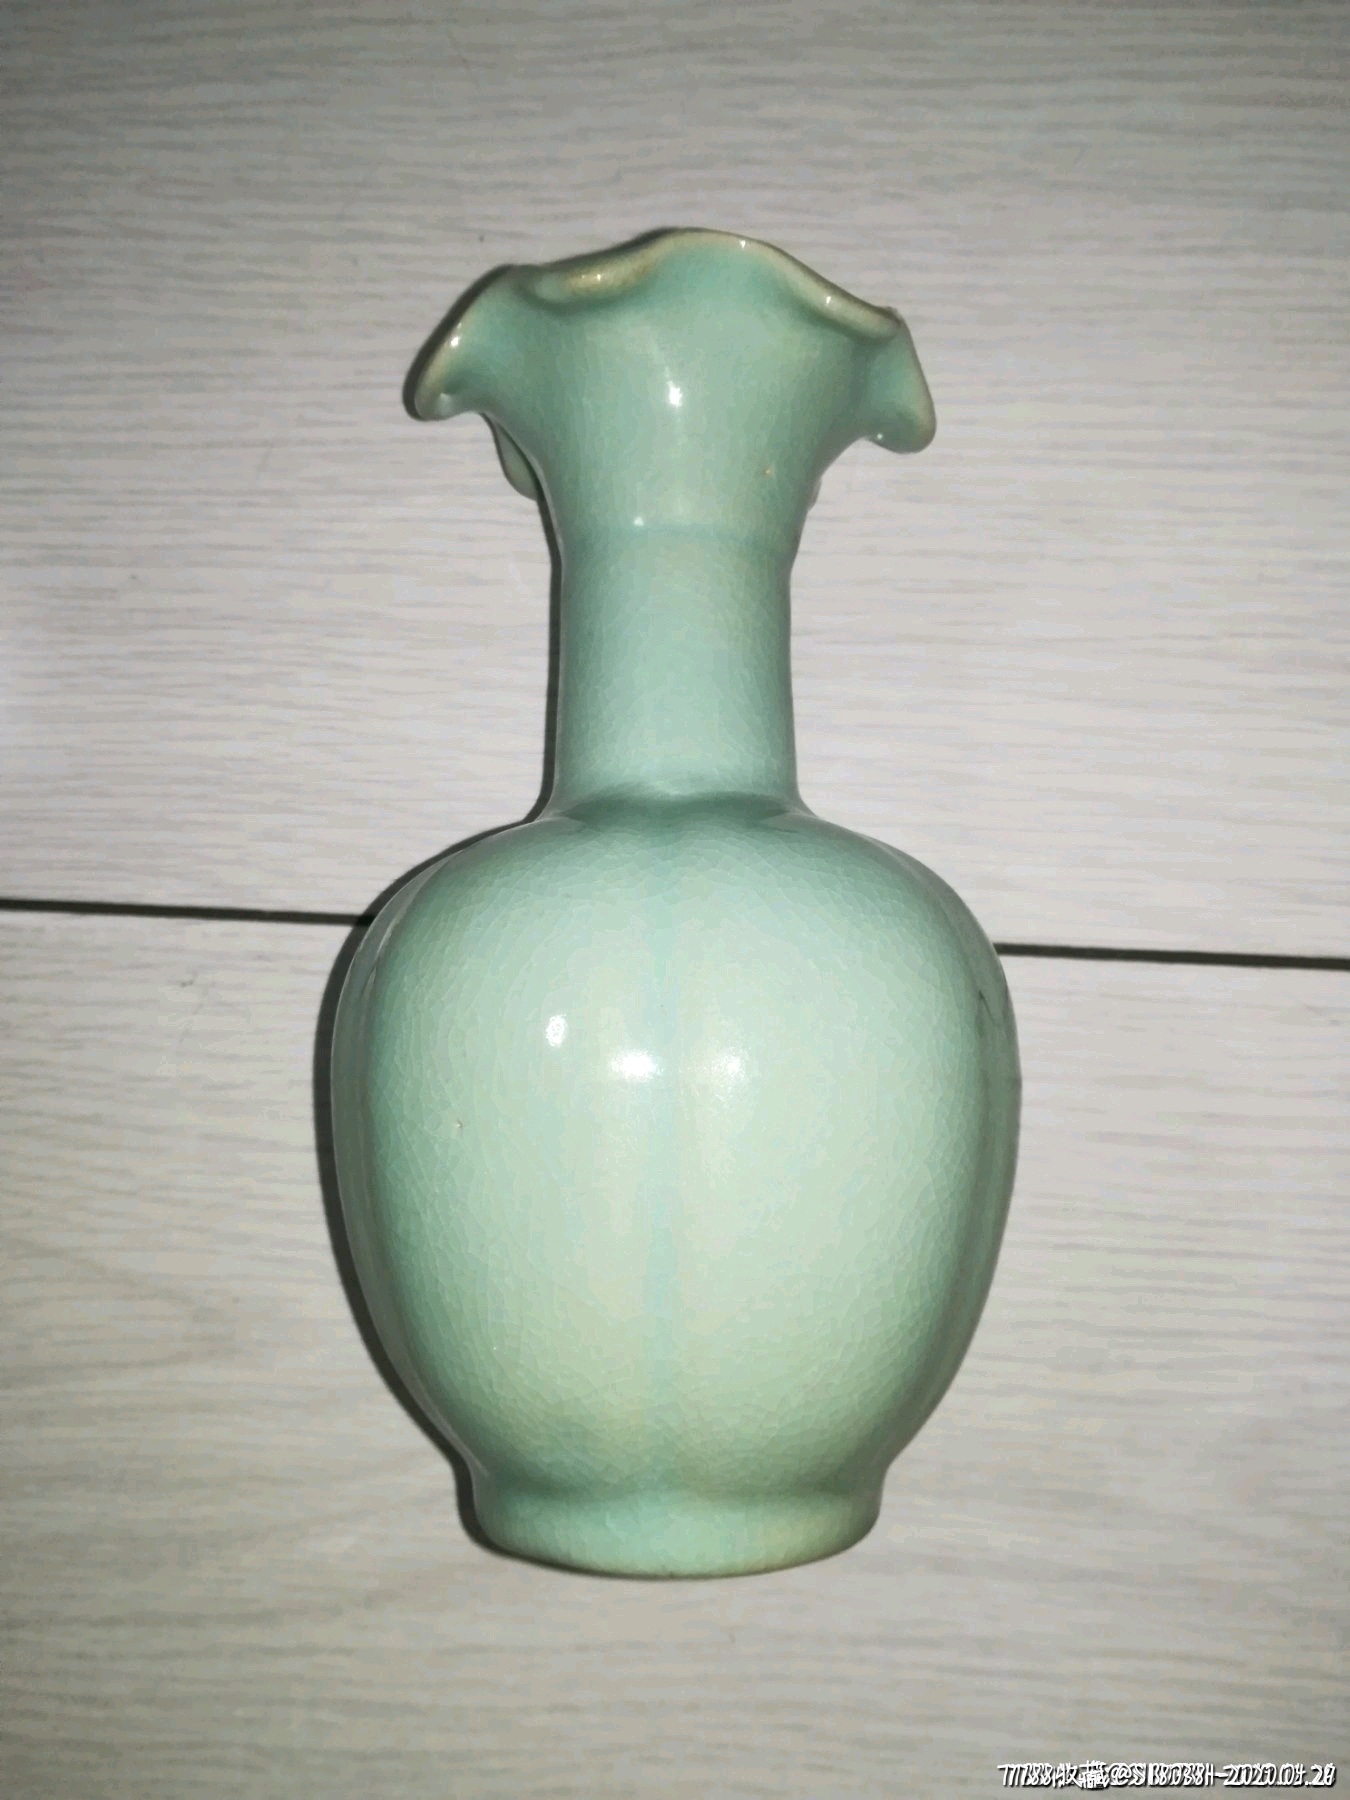 荷口瓶汝瓷宋汝窑粉青釉椭圆八棱瓶古玩收藏古董杂项摆件陶瓷瓷器花瓶